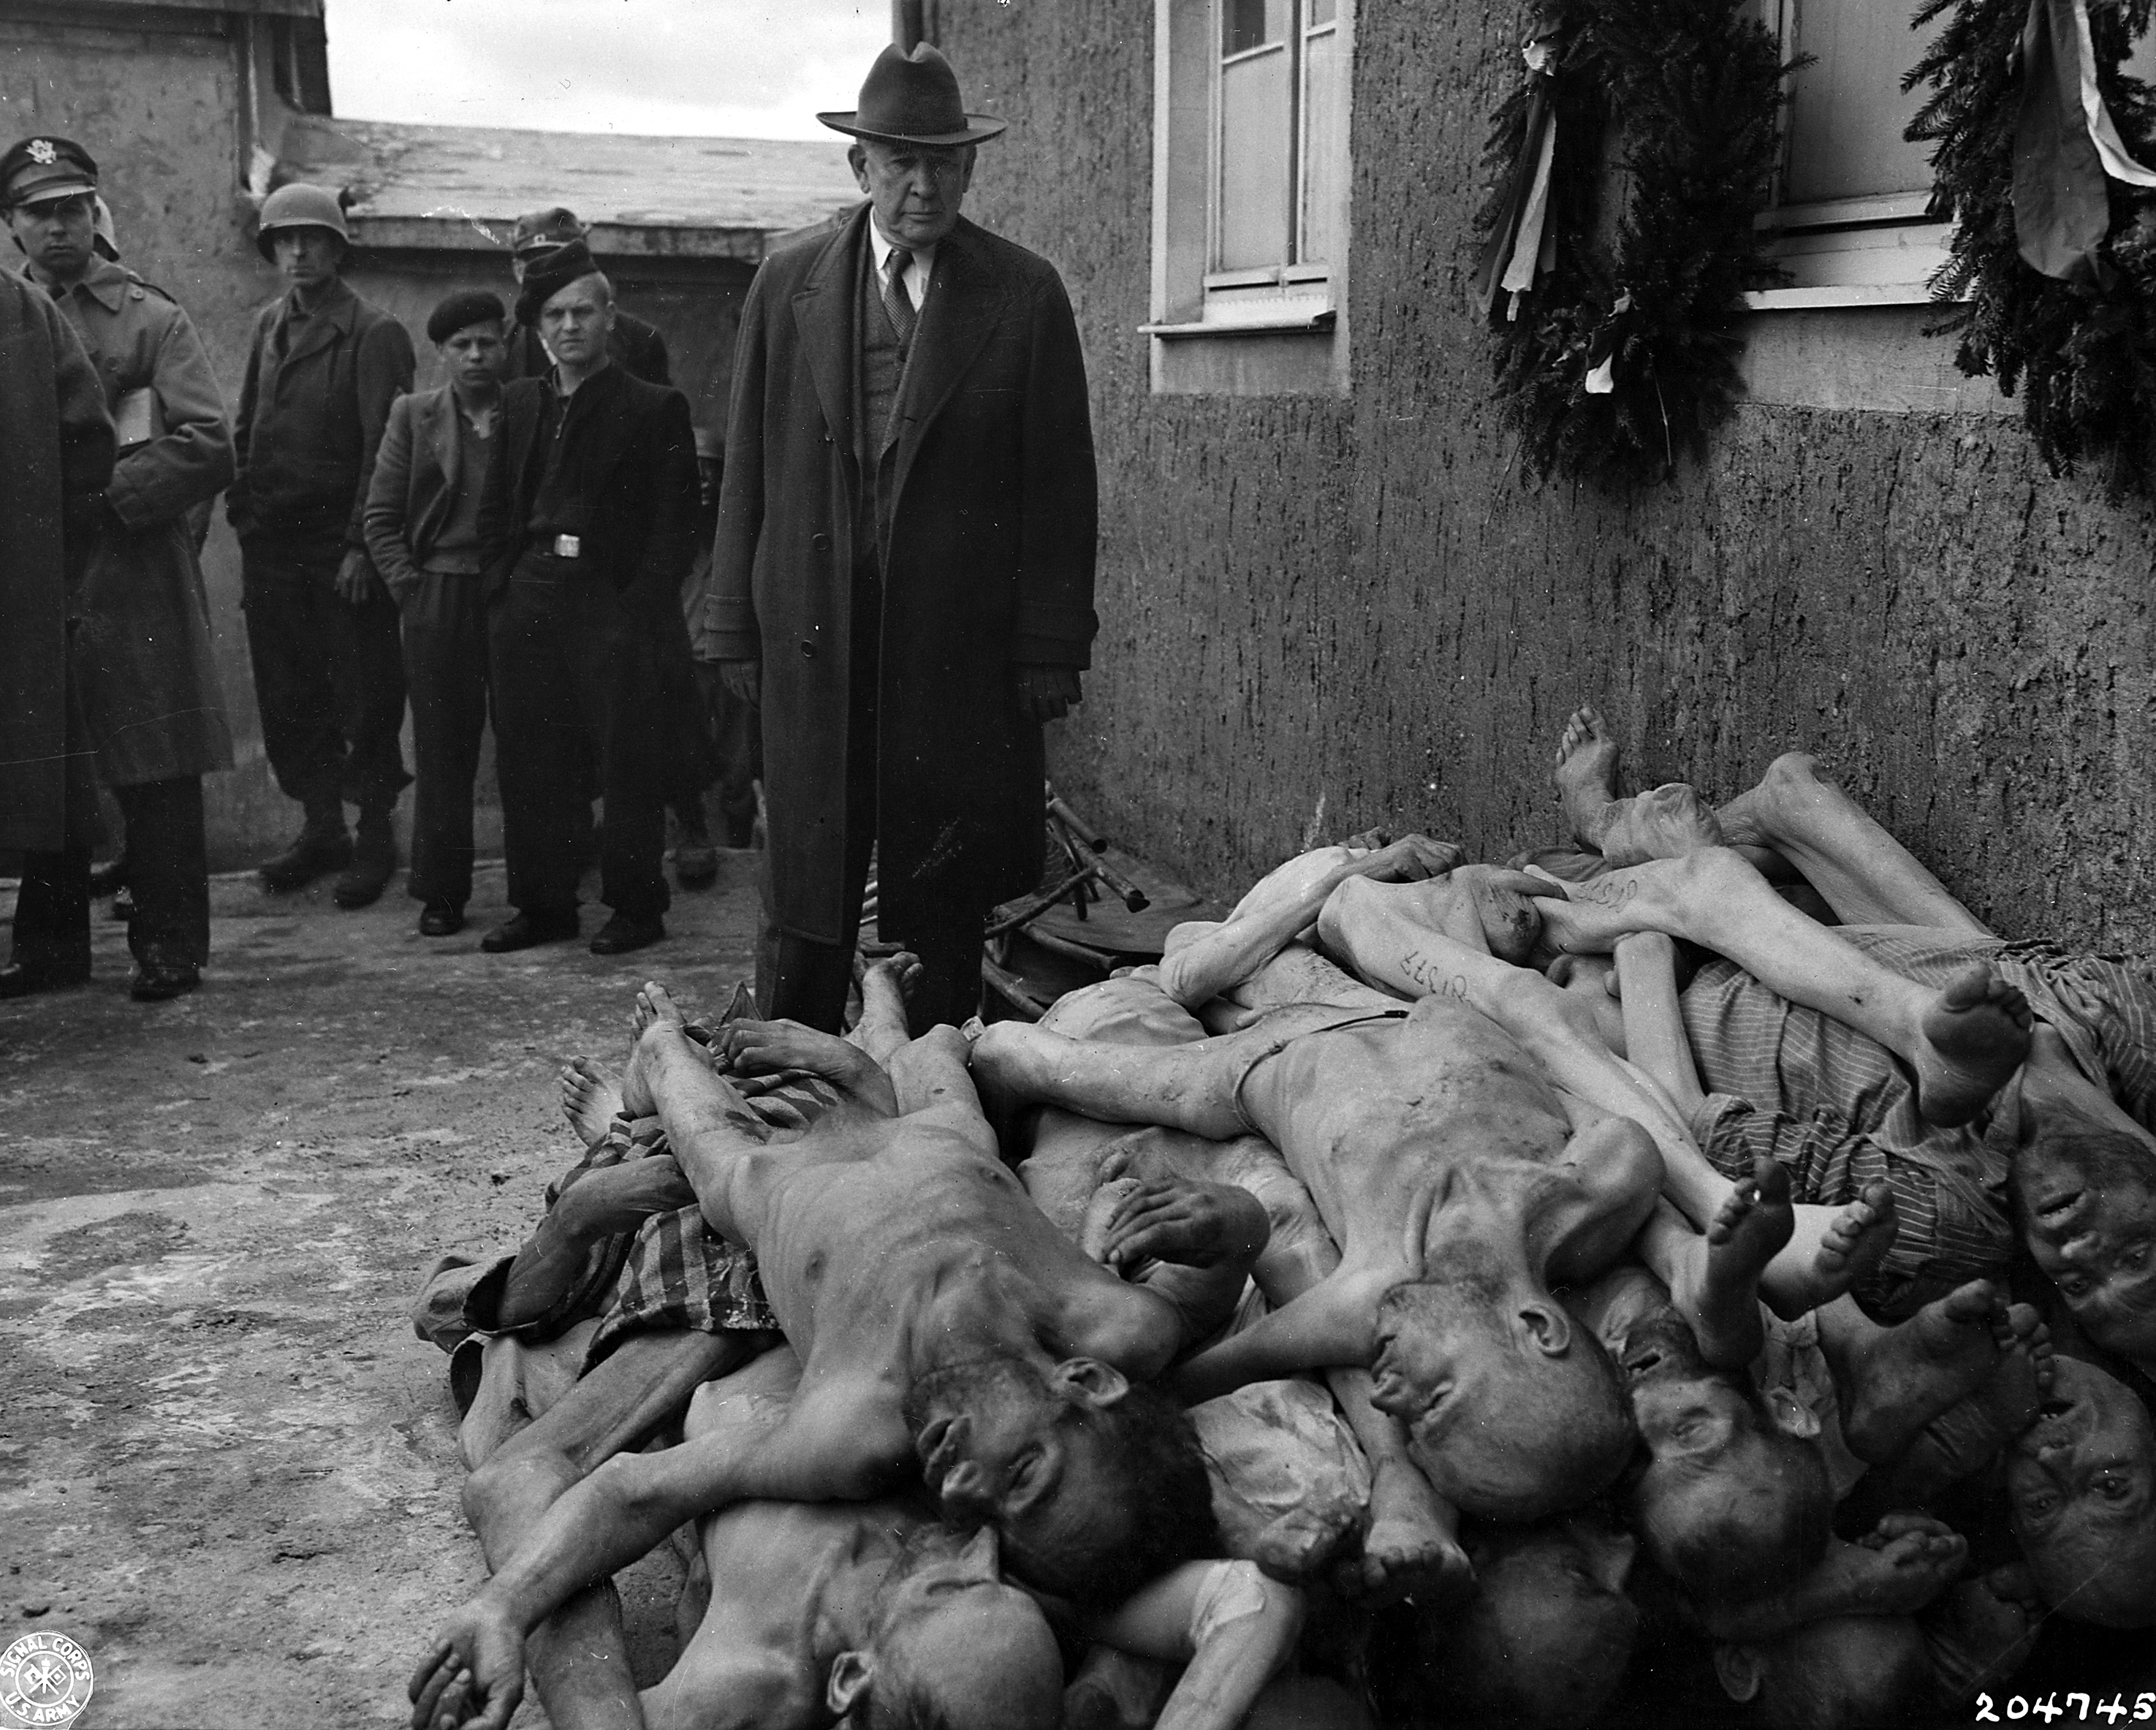 http://waralbum.ru/wp-content/uploads/2010/06/Buchenwald-bei-Weimar-am-24-April-1945.jpg